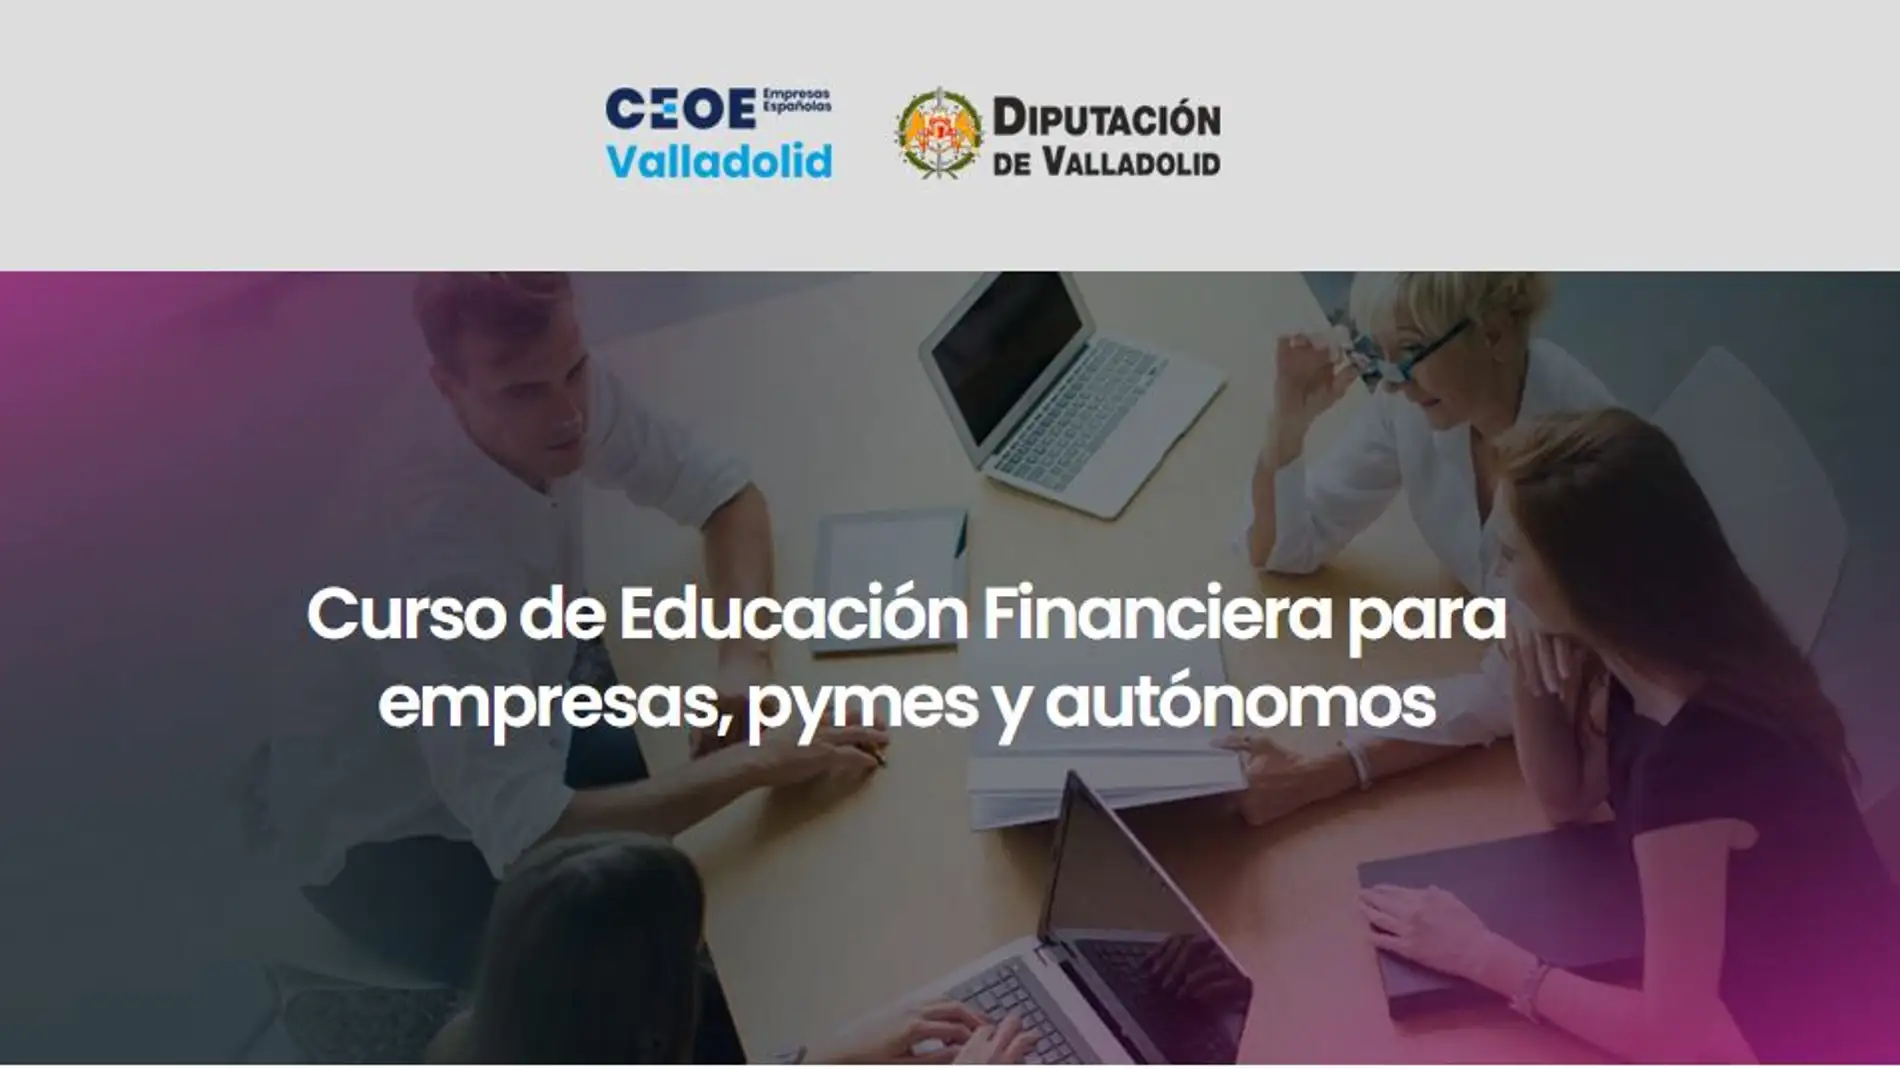 CEOE Valladolid y la Diputación lanzan el proyecto de Habilidades Financieras dirigido a empresas